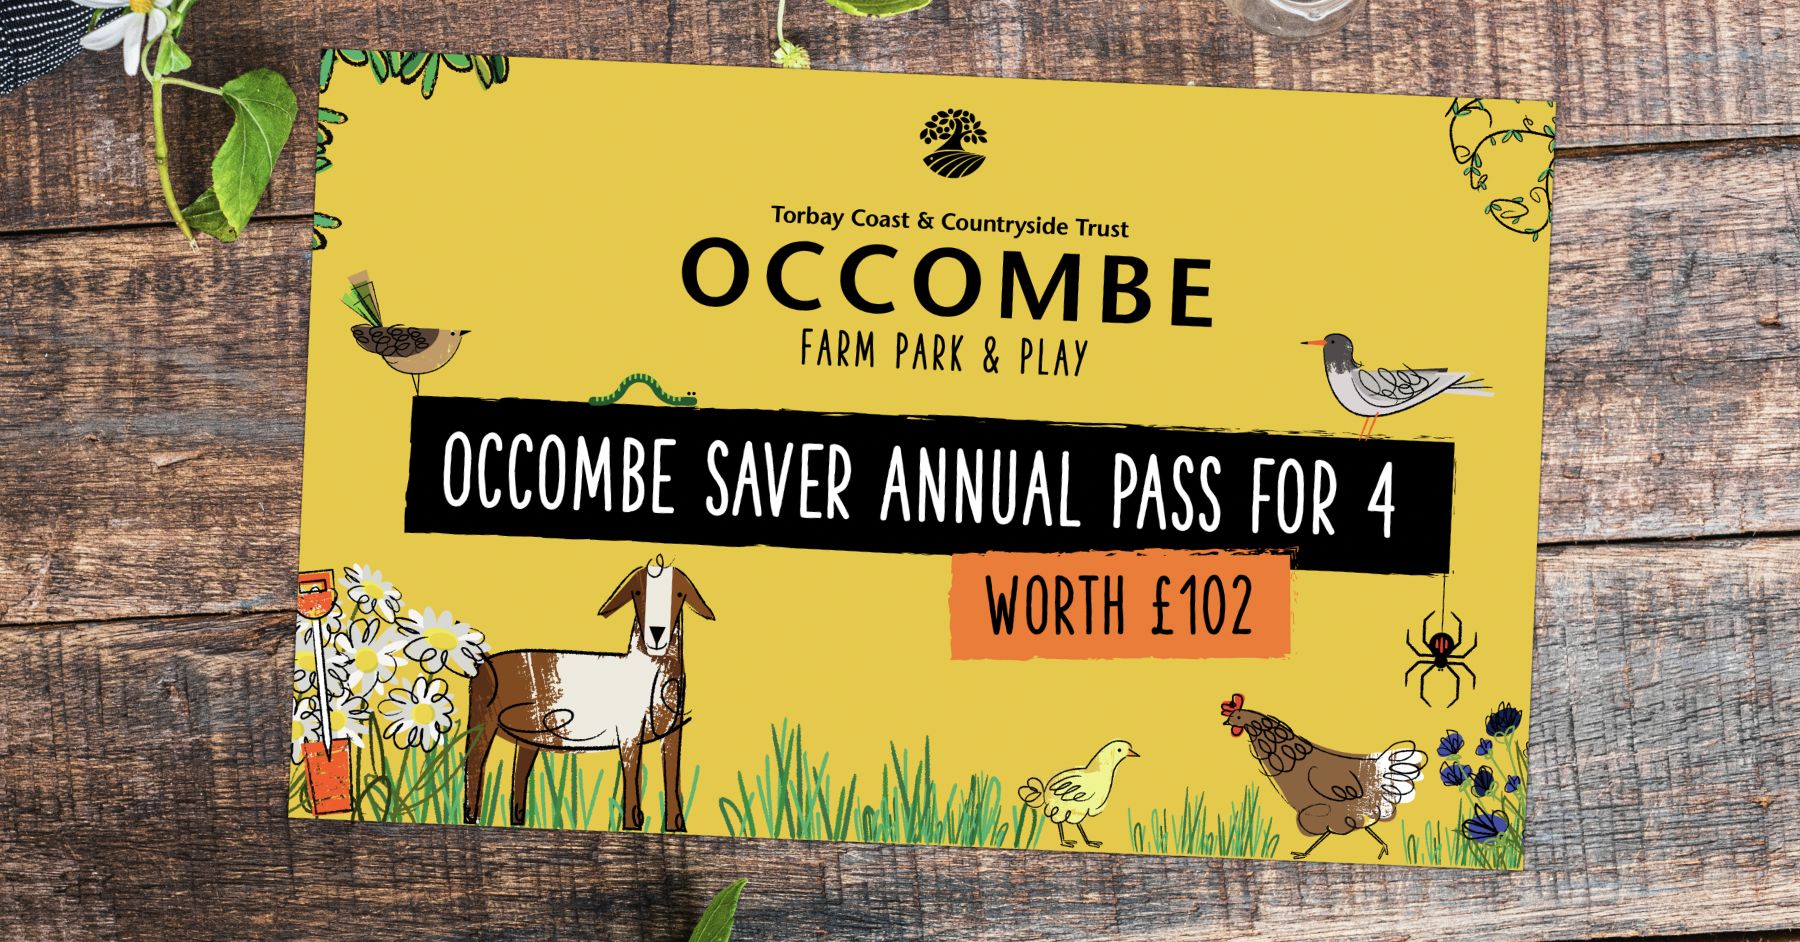 Occombe Farm